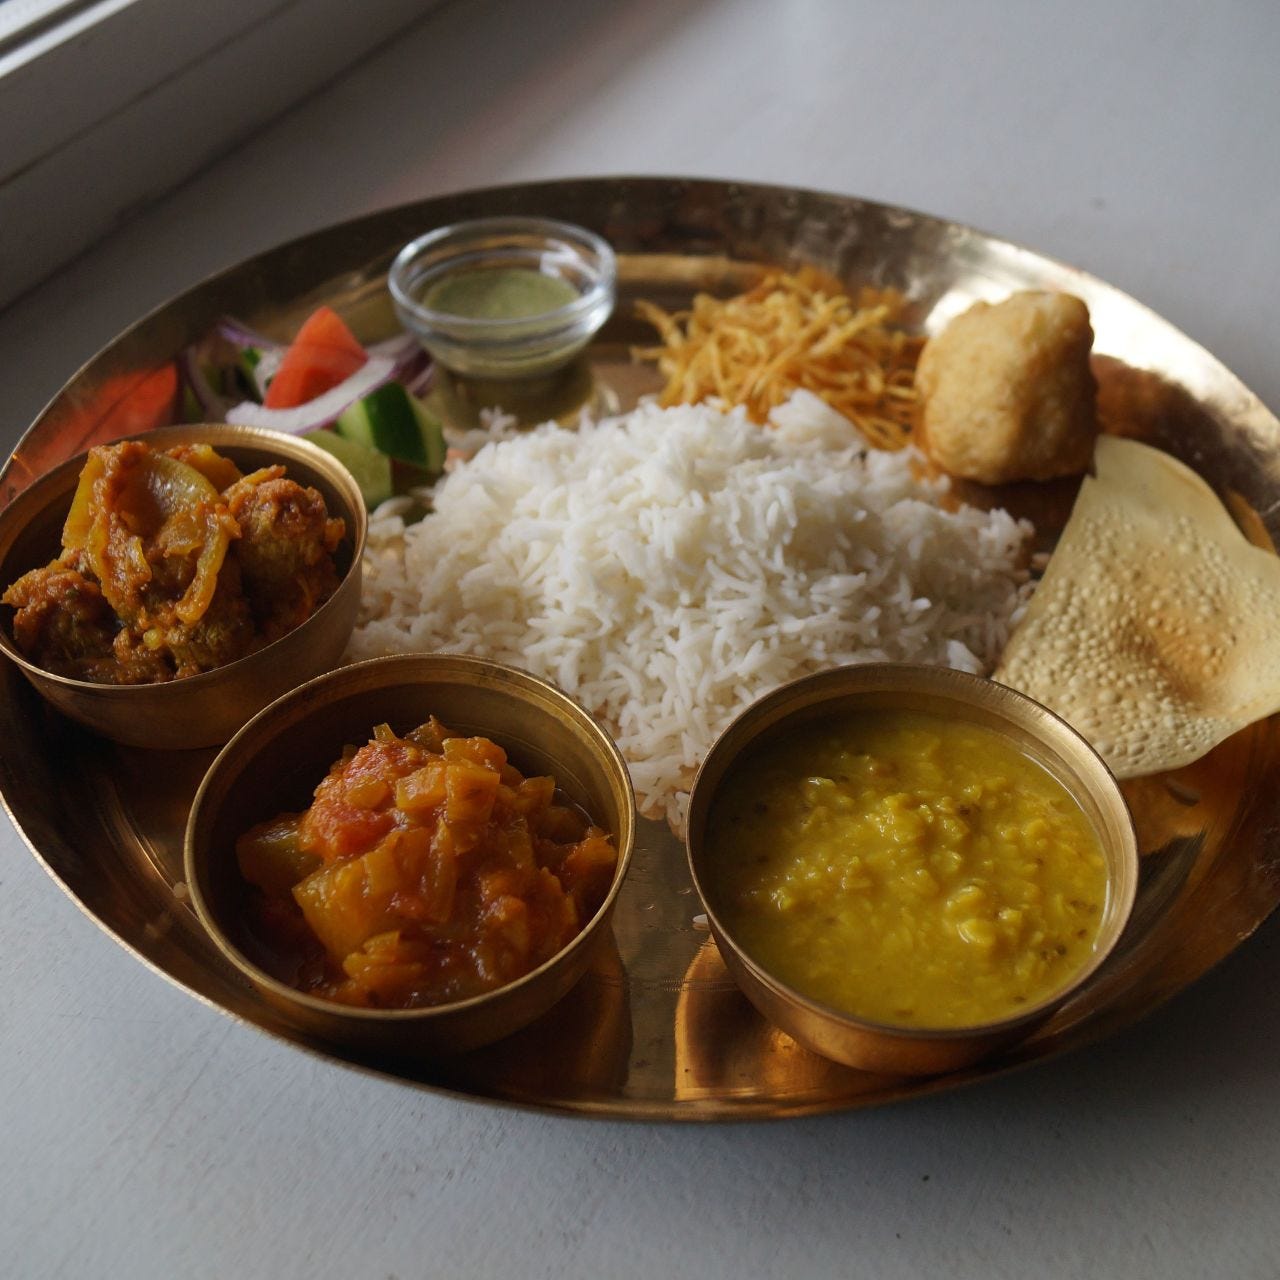 東インド／ベンガル料理ならではのベジセットメニューを堪能。